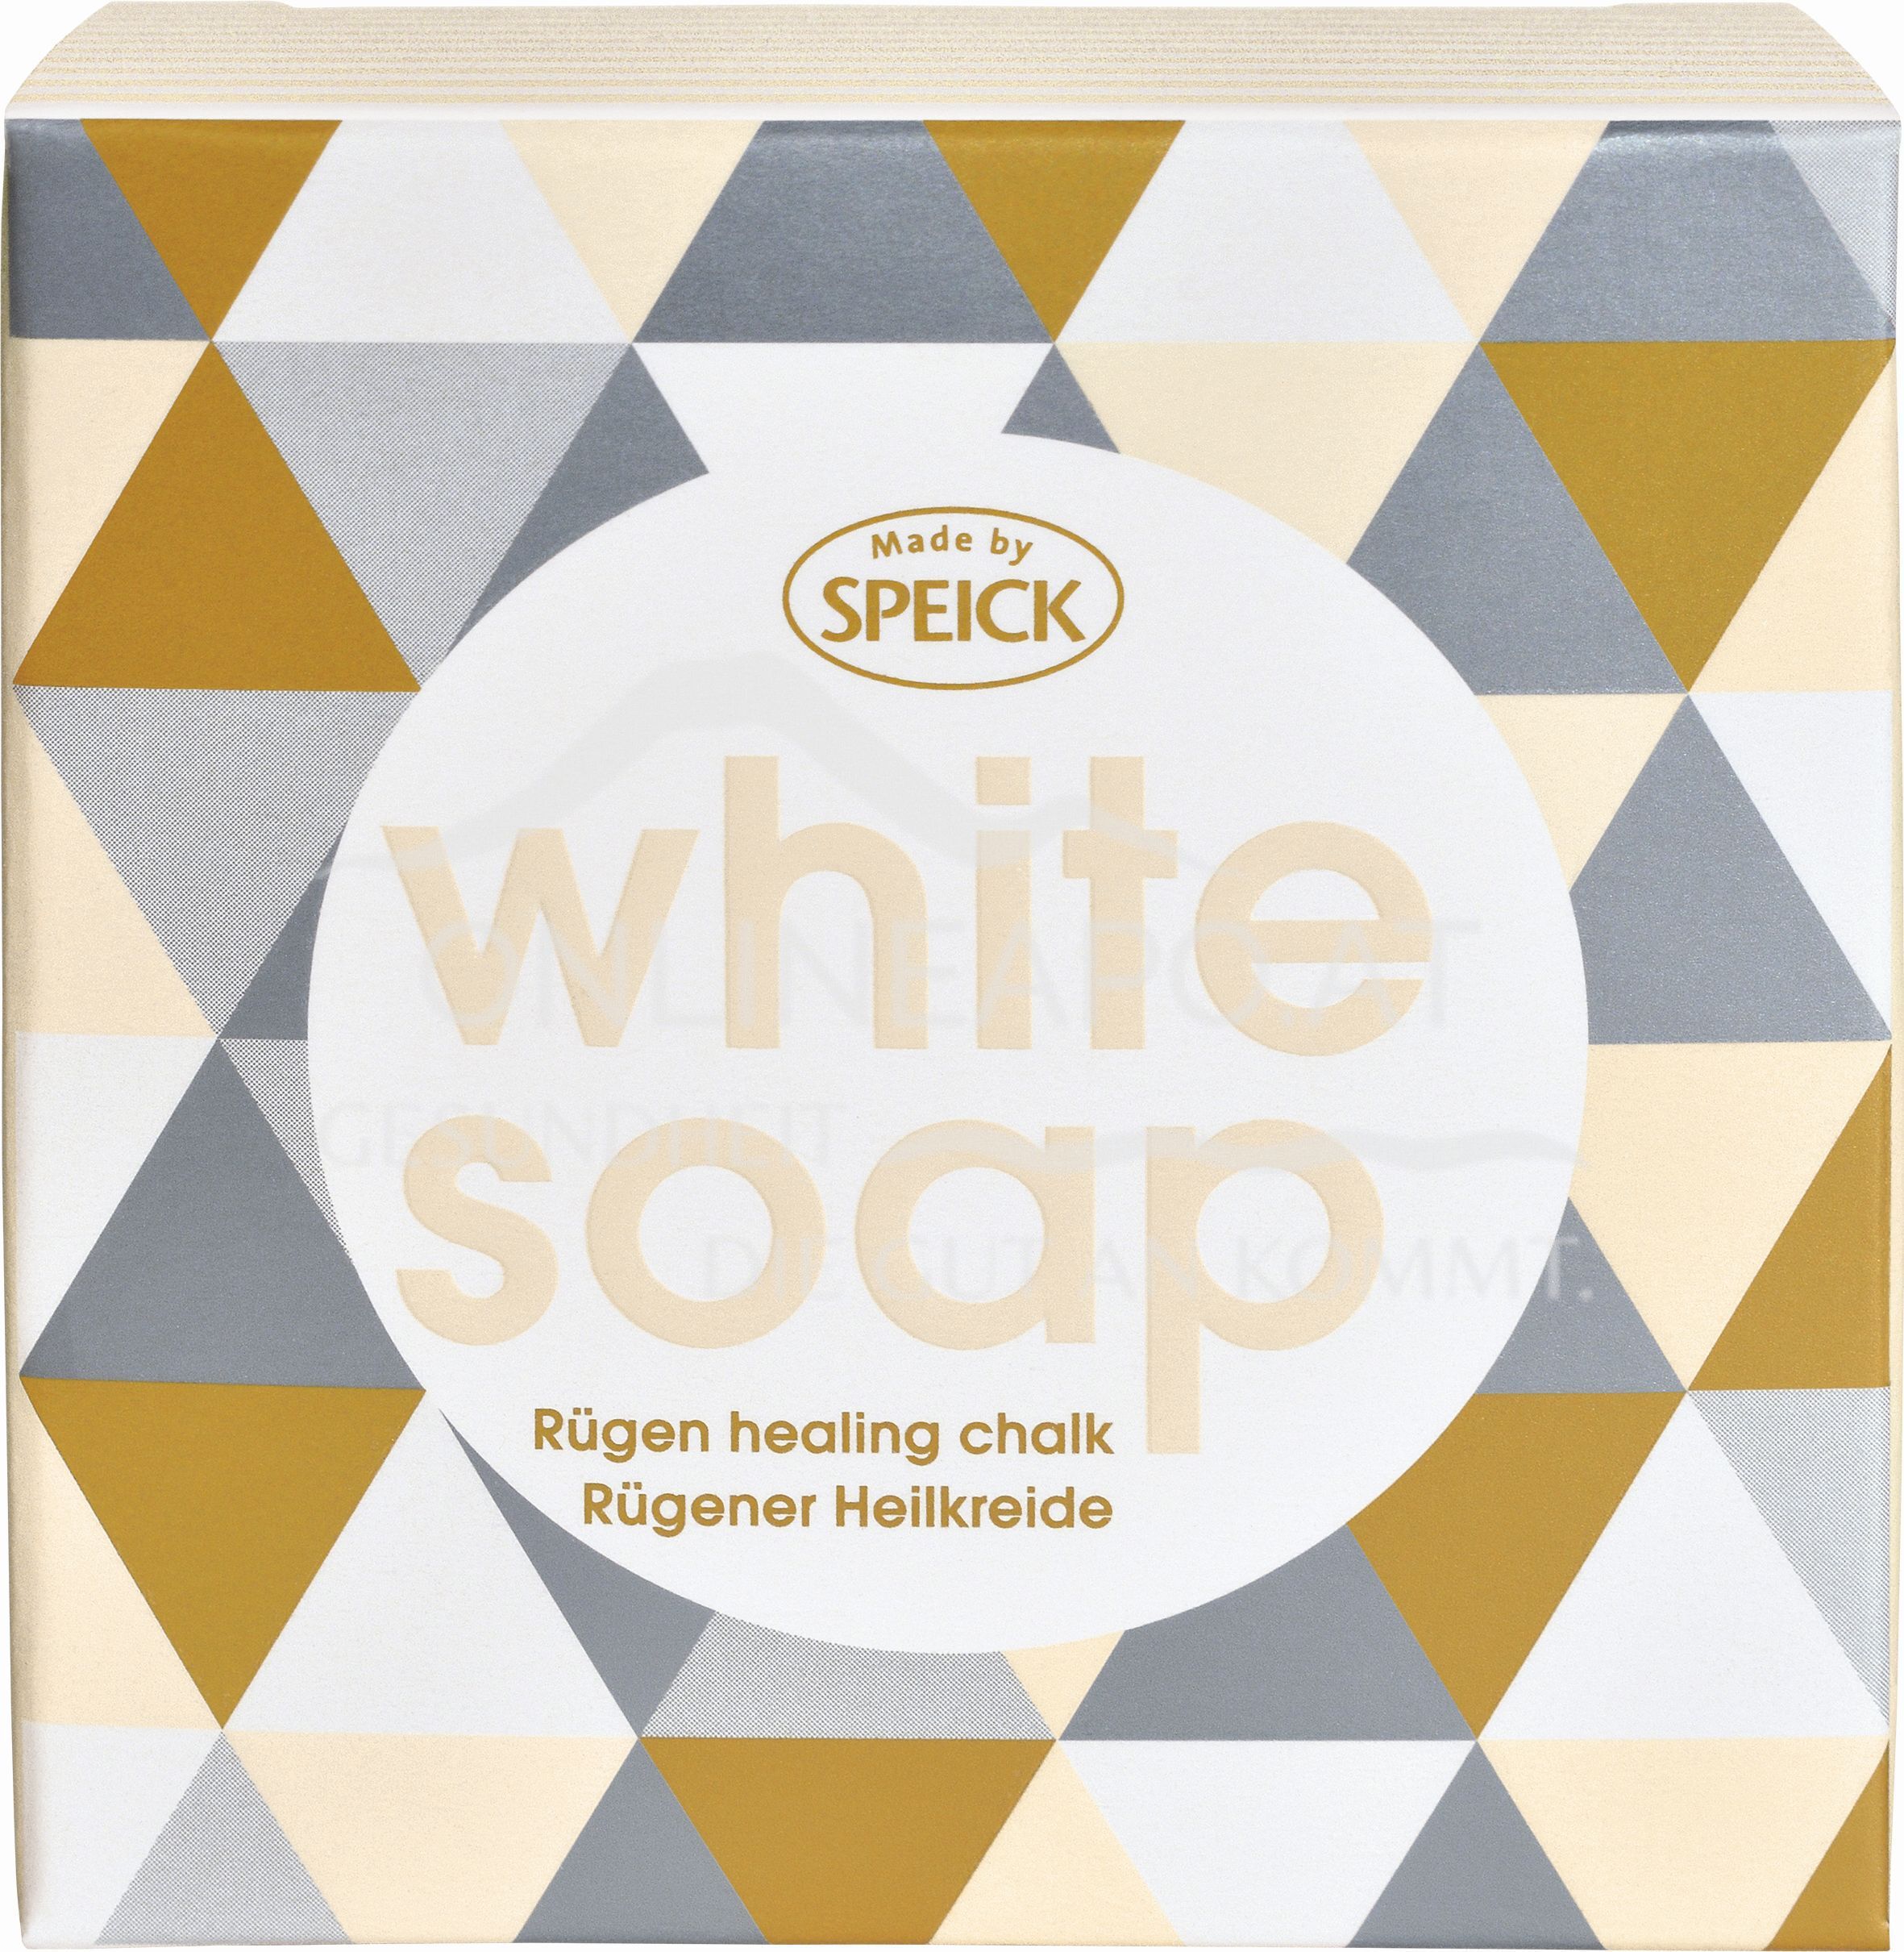 Made by Speick White Soap - Rügener Heilkreide